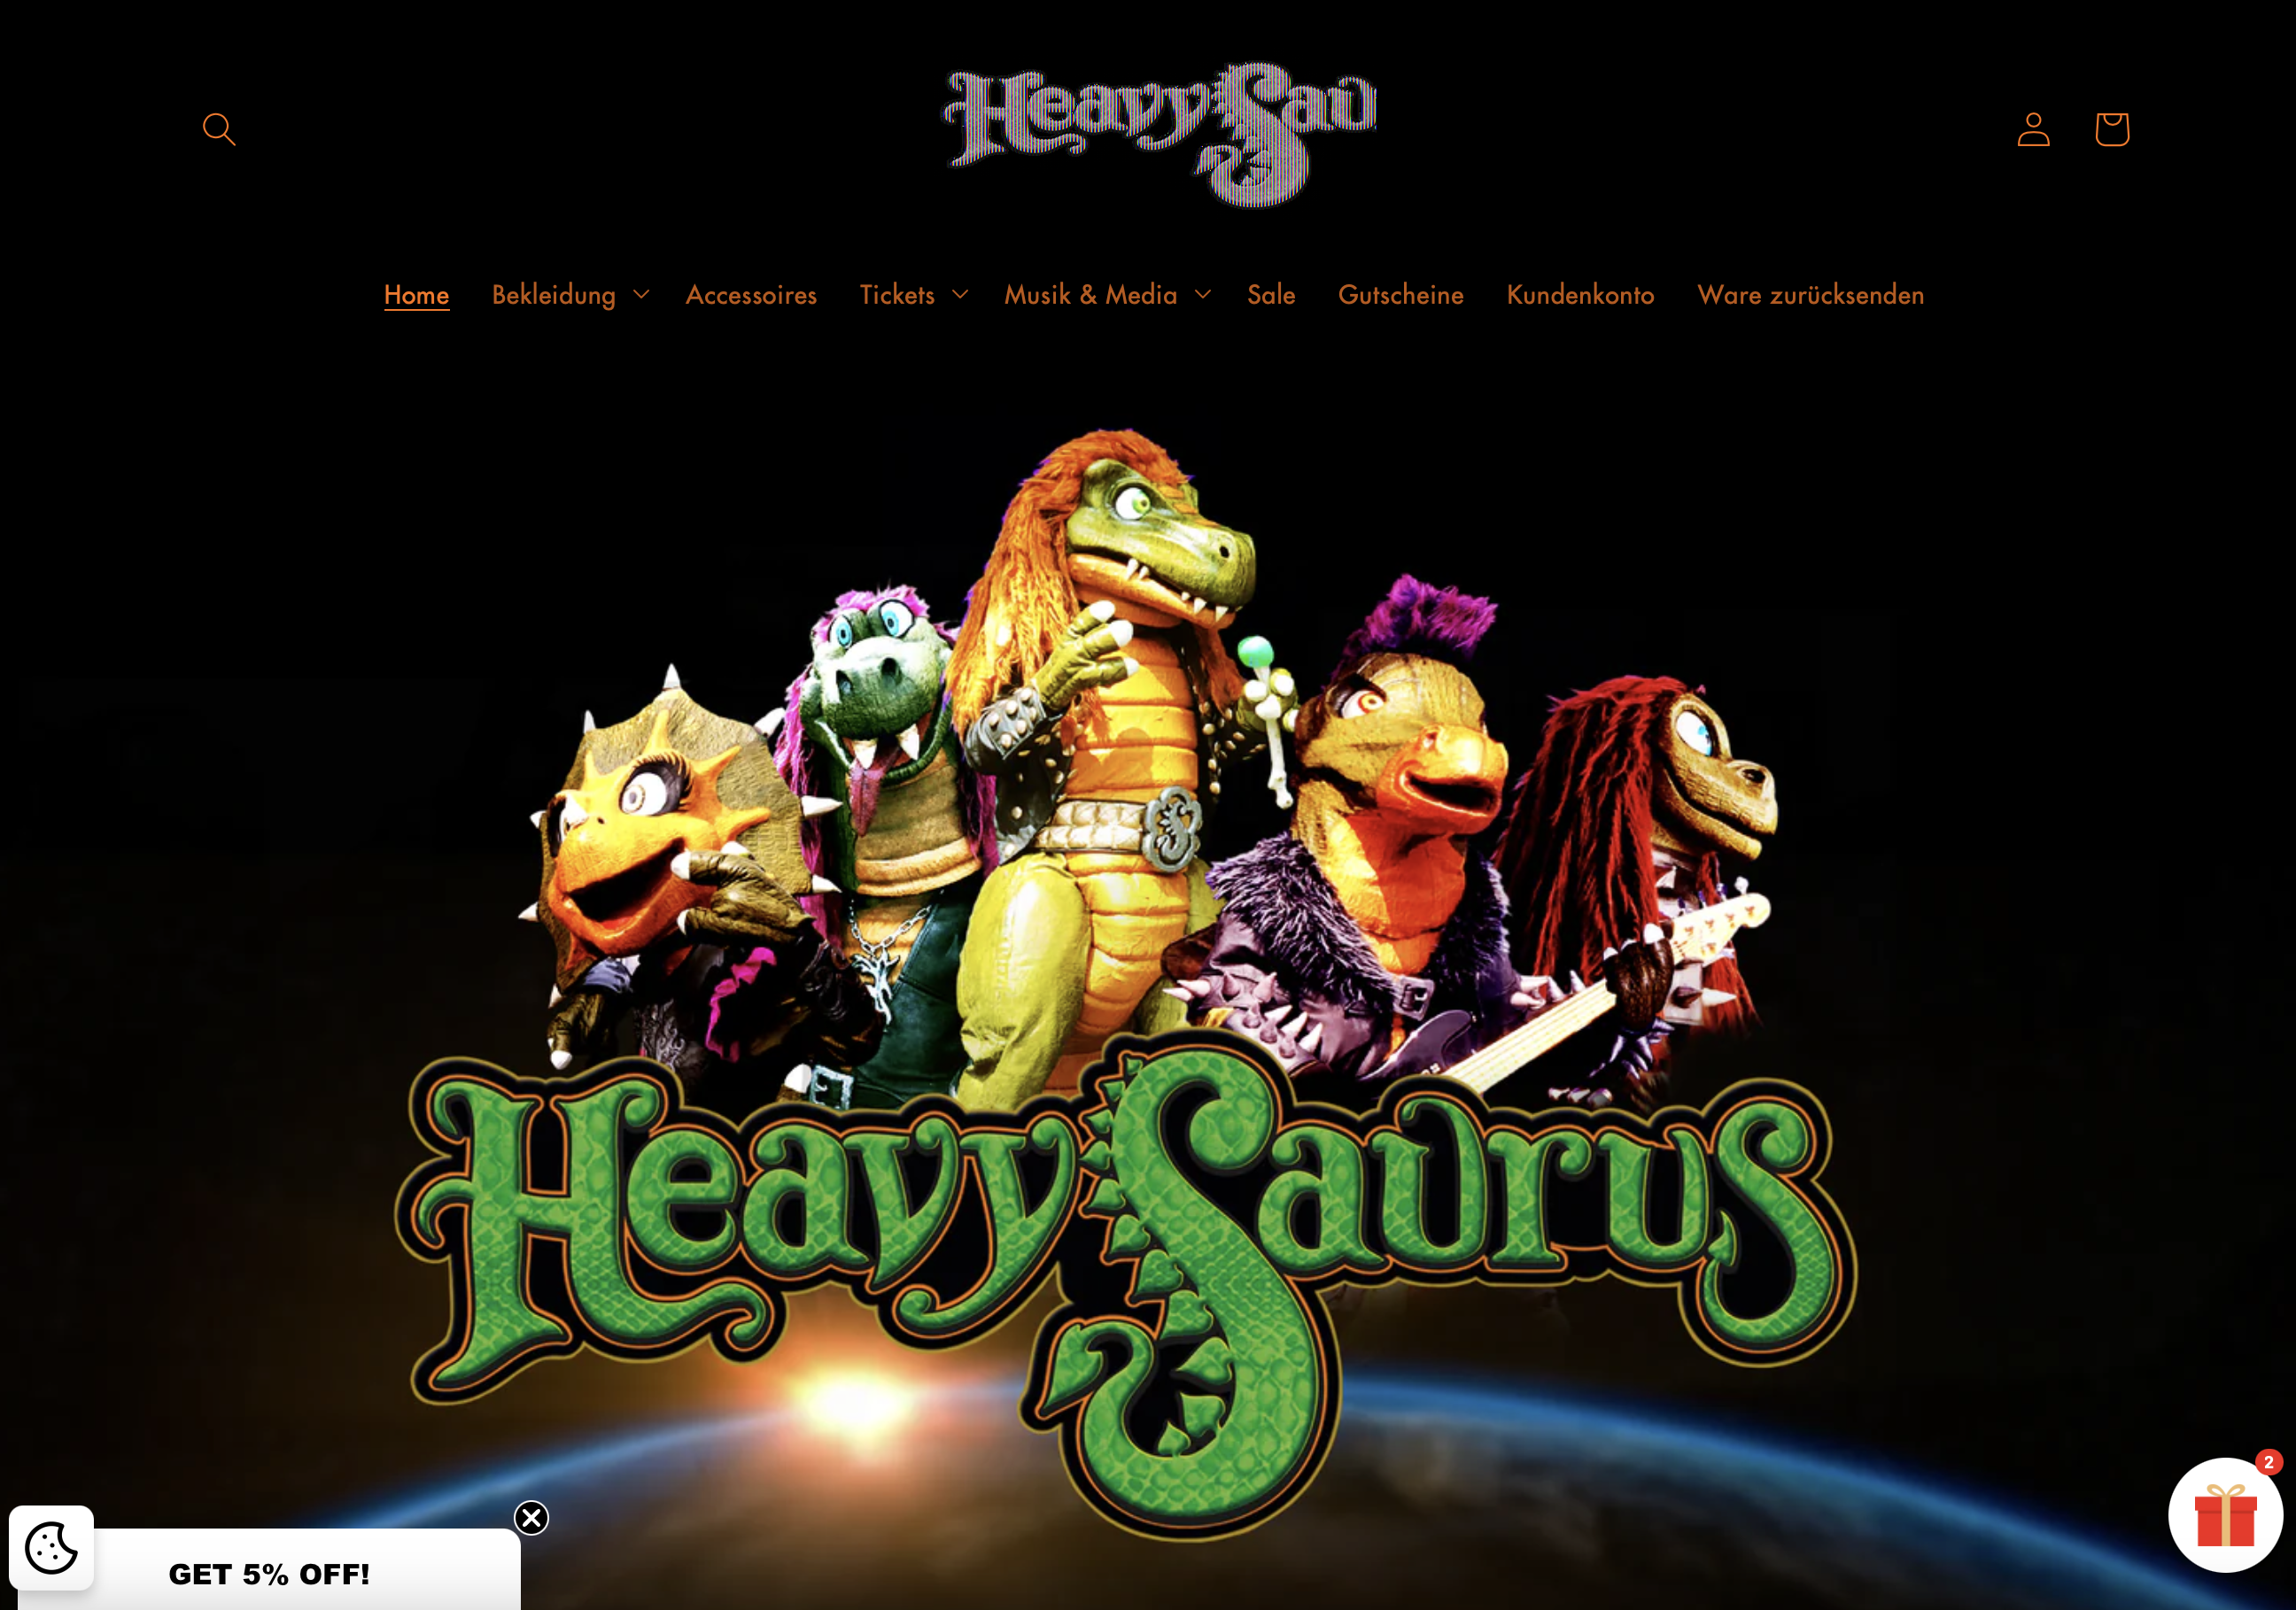 Heavysaurus Store – Rockige Kinderbekleidung und Merchandise